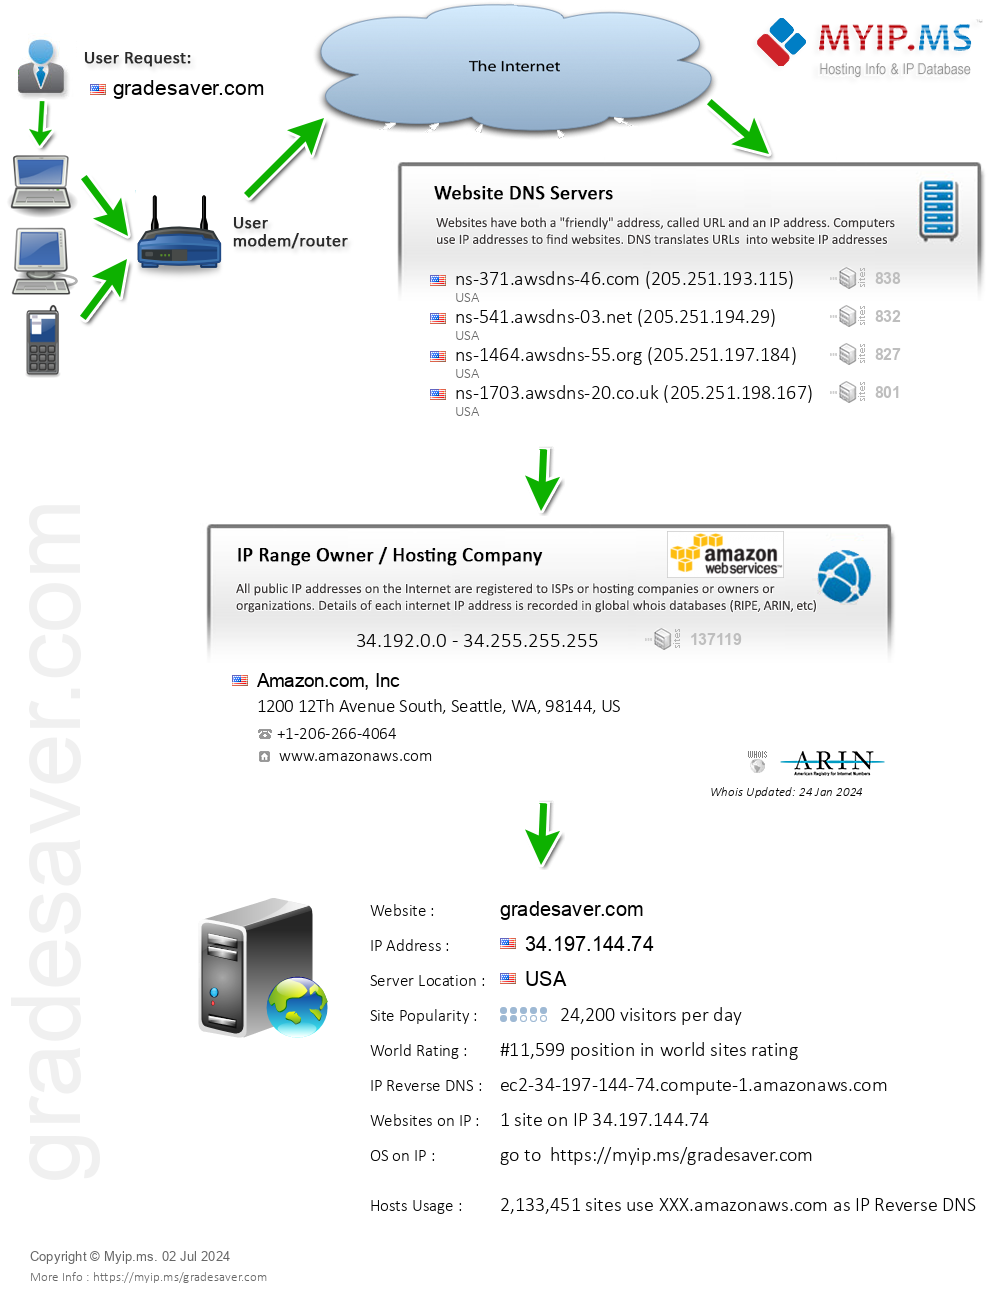 Gradesaver.com - Website Hosting Visual IP Diagram